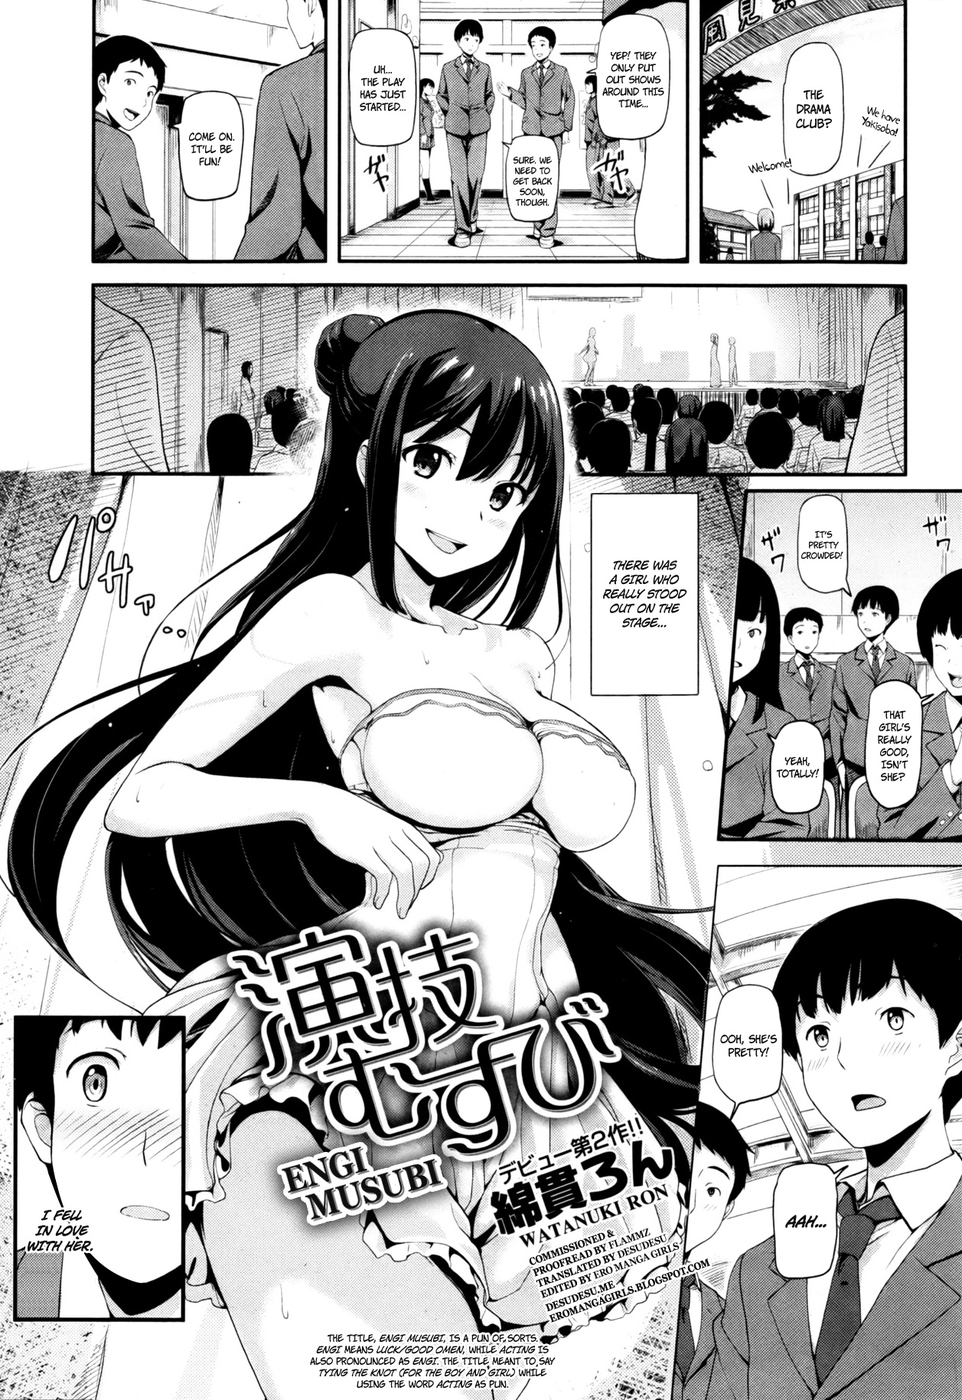 Hentai Manga Comic-Engi Musubi-Read-1